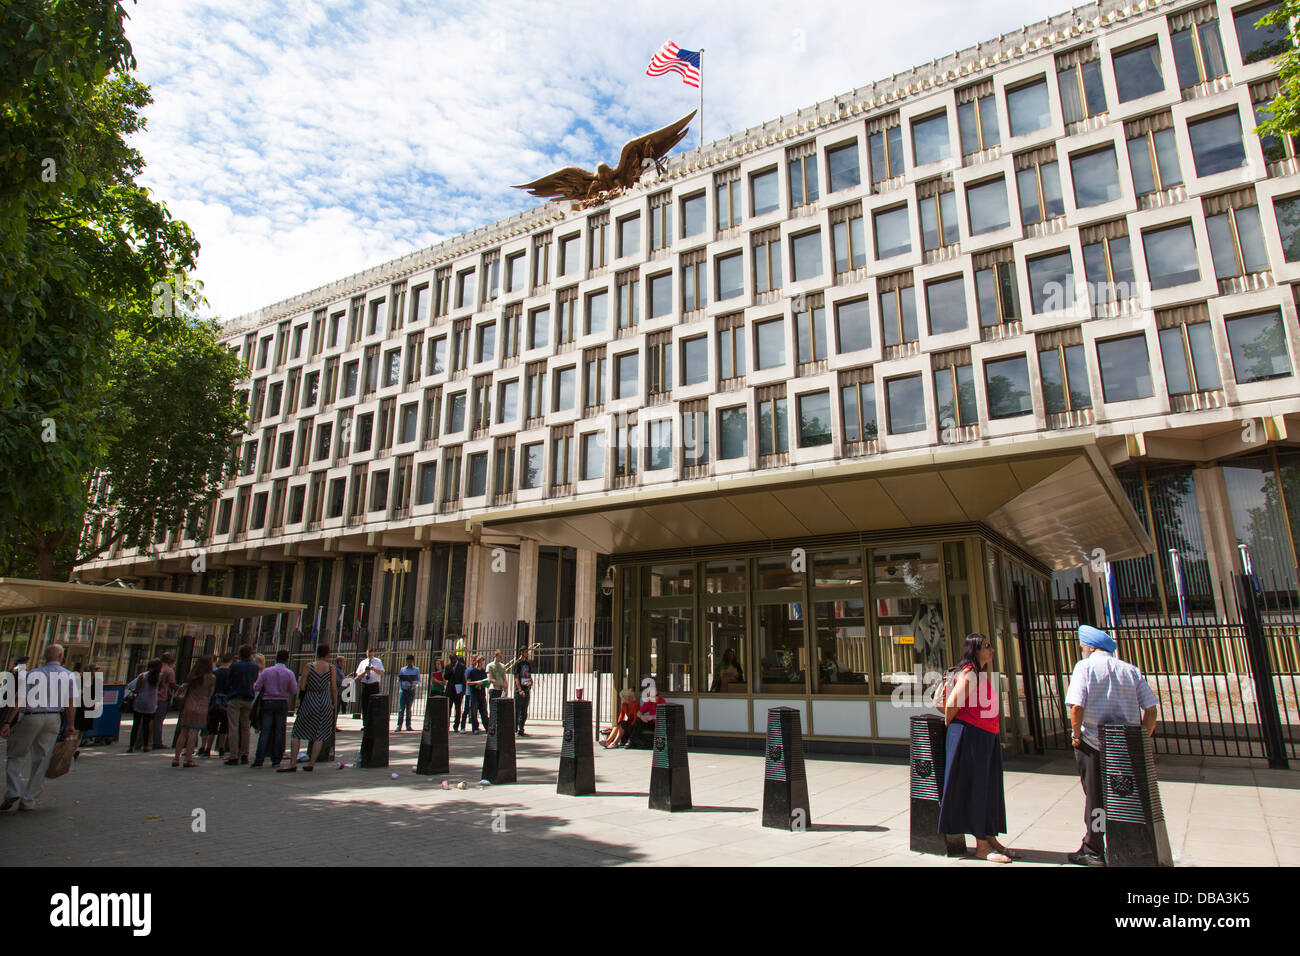 The U.S. Embassy in Grosvenor Square, Mayfair, London. Stock Photo